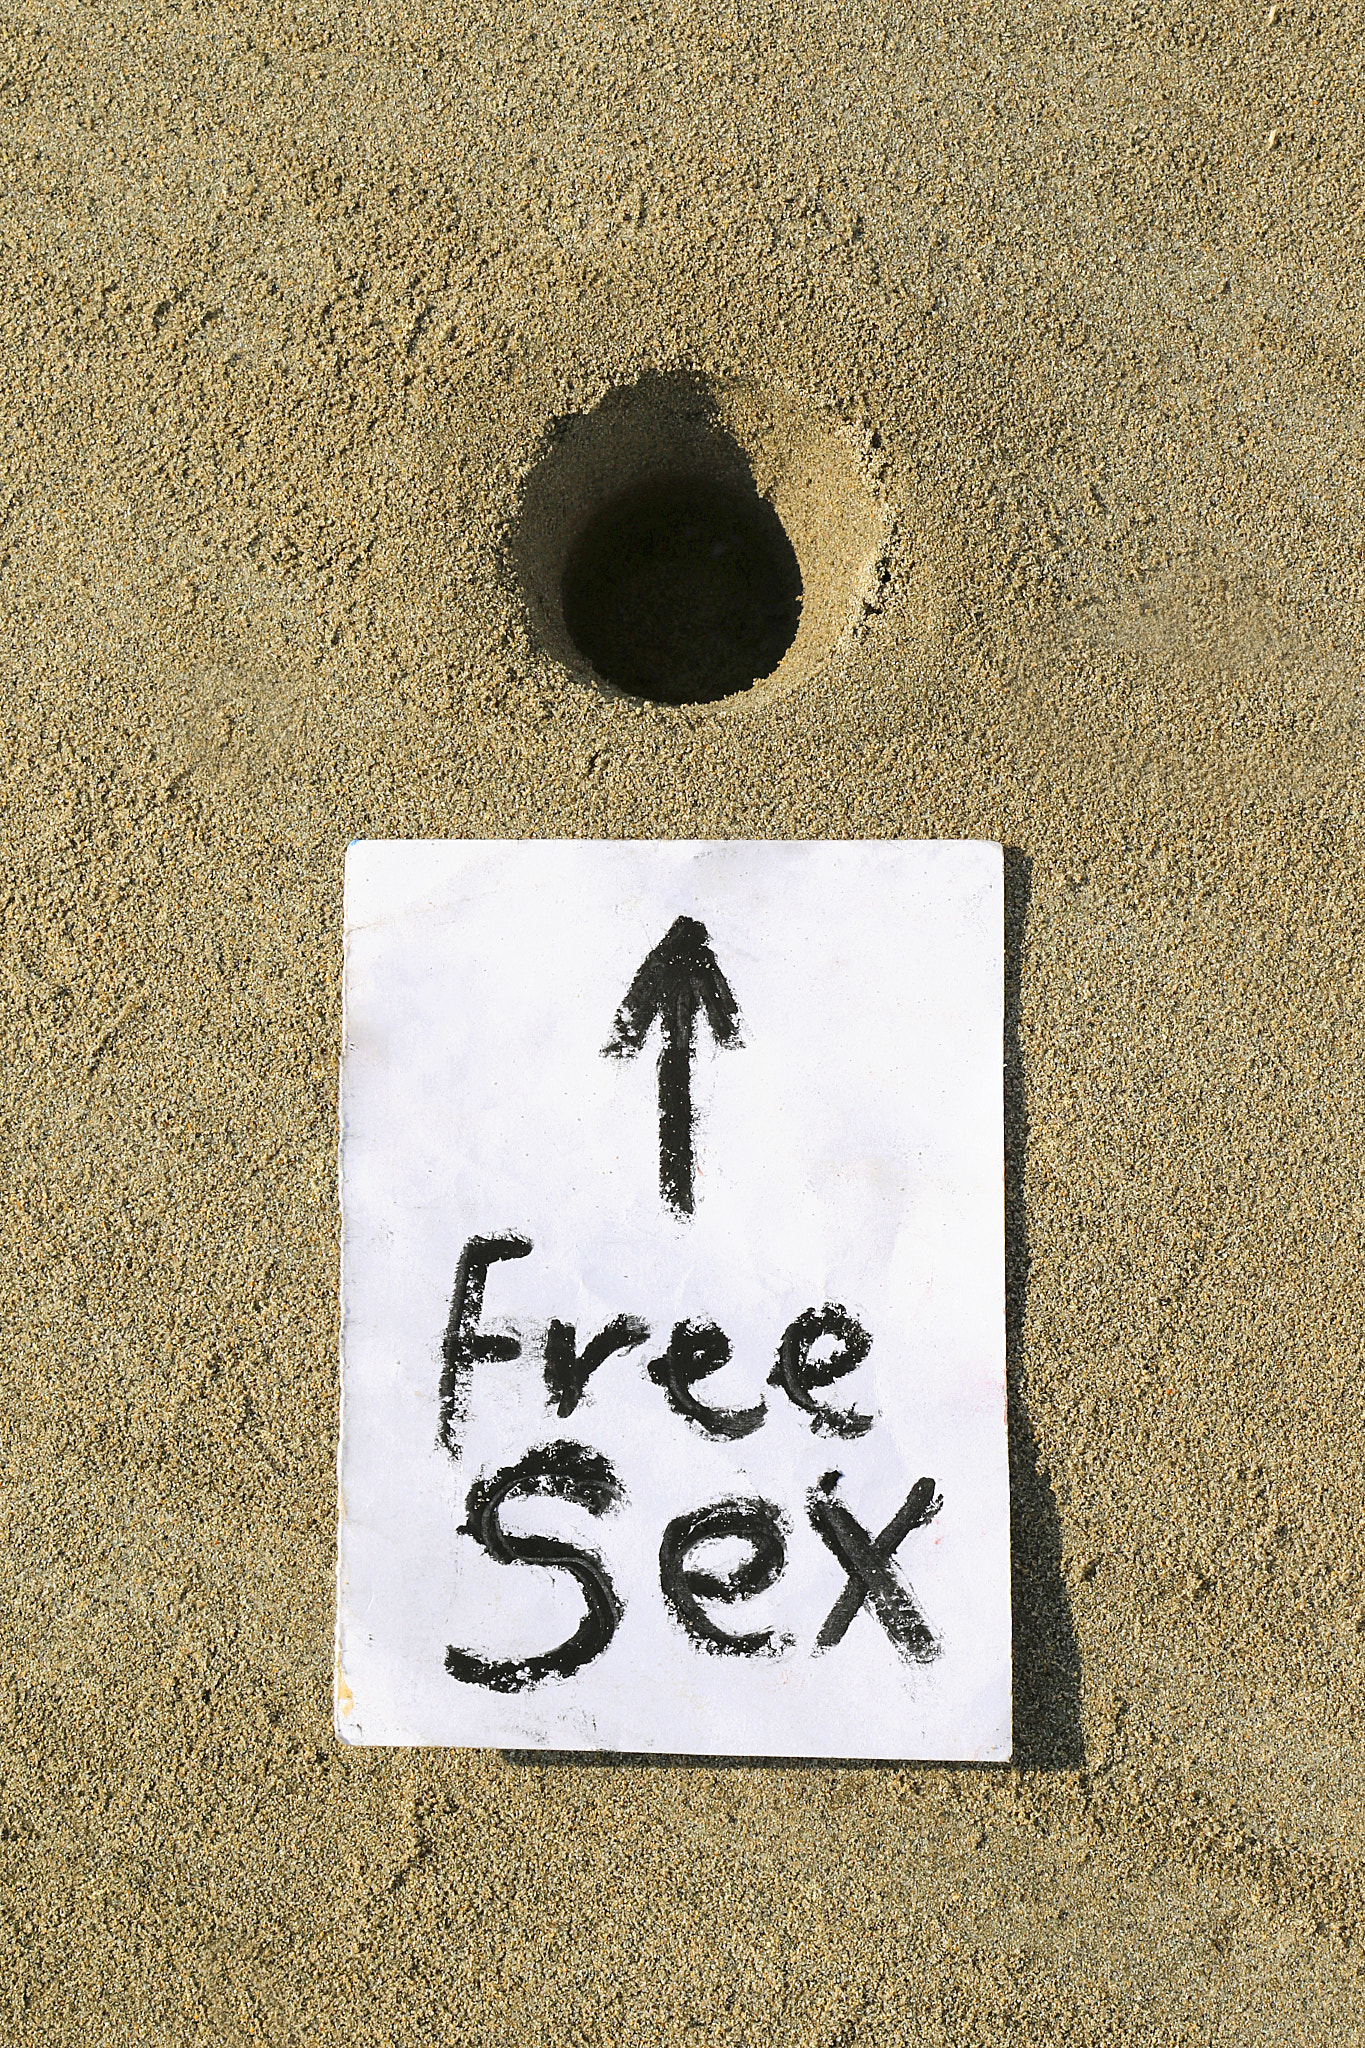 Free sex